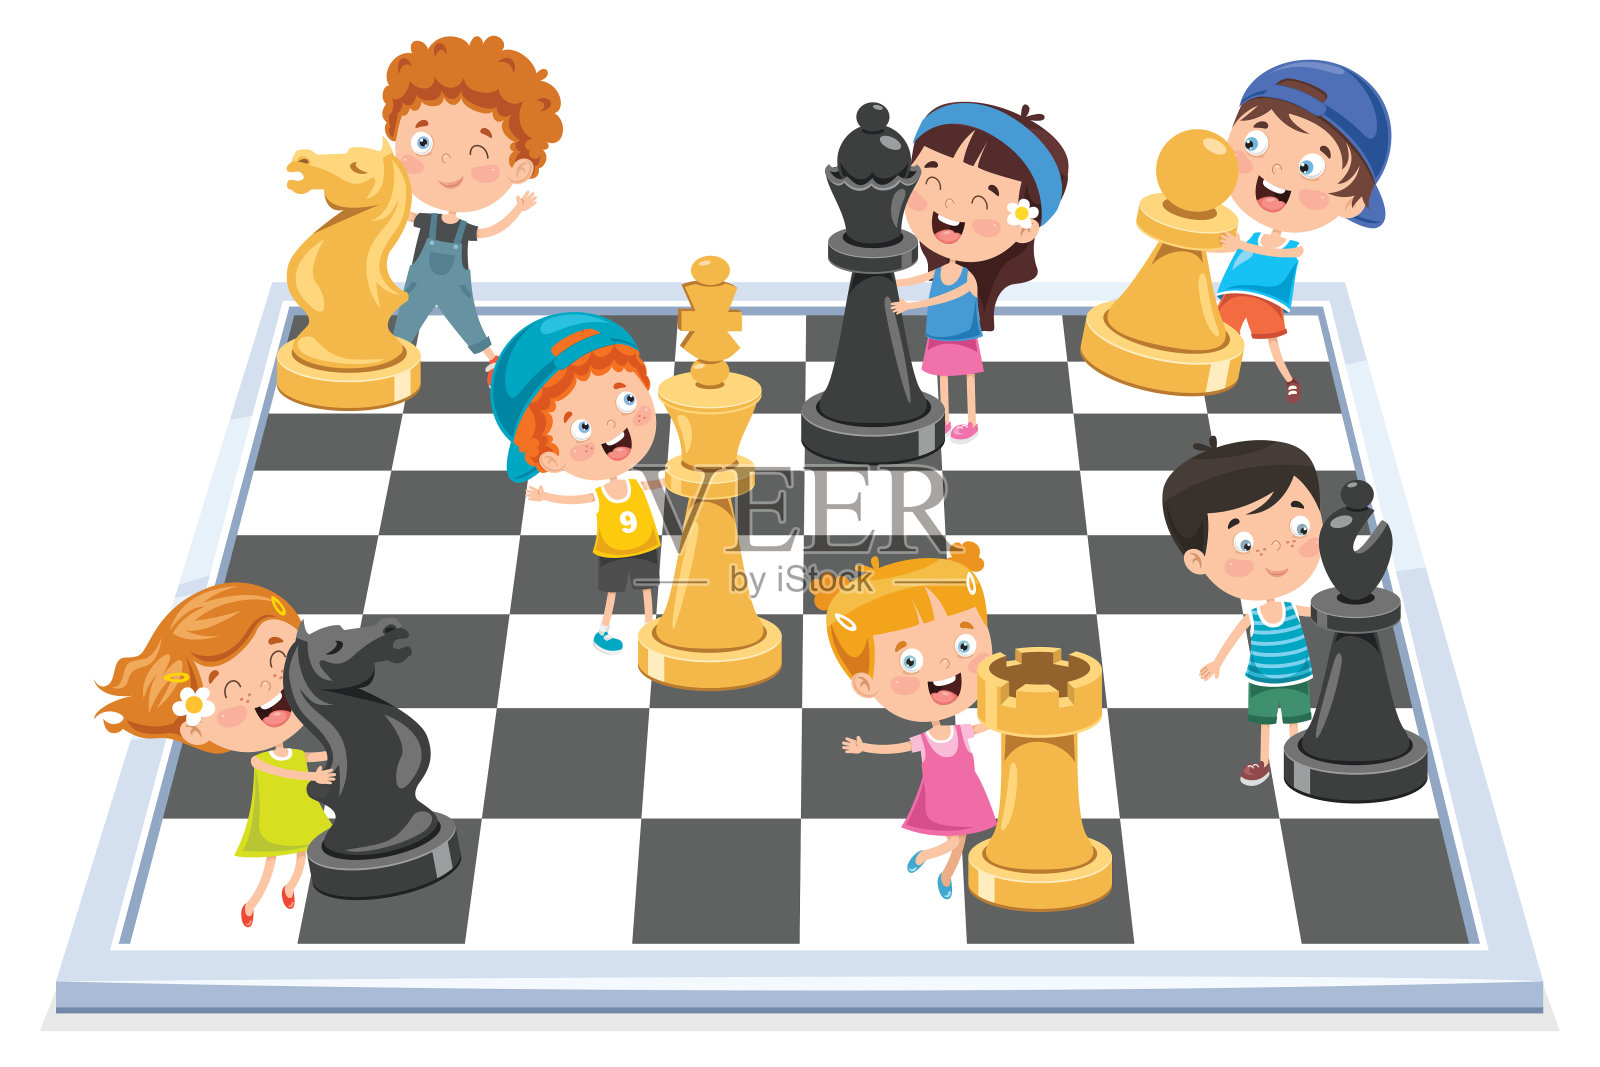 卡通人物下棋游戏插画图片素材